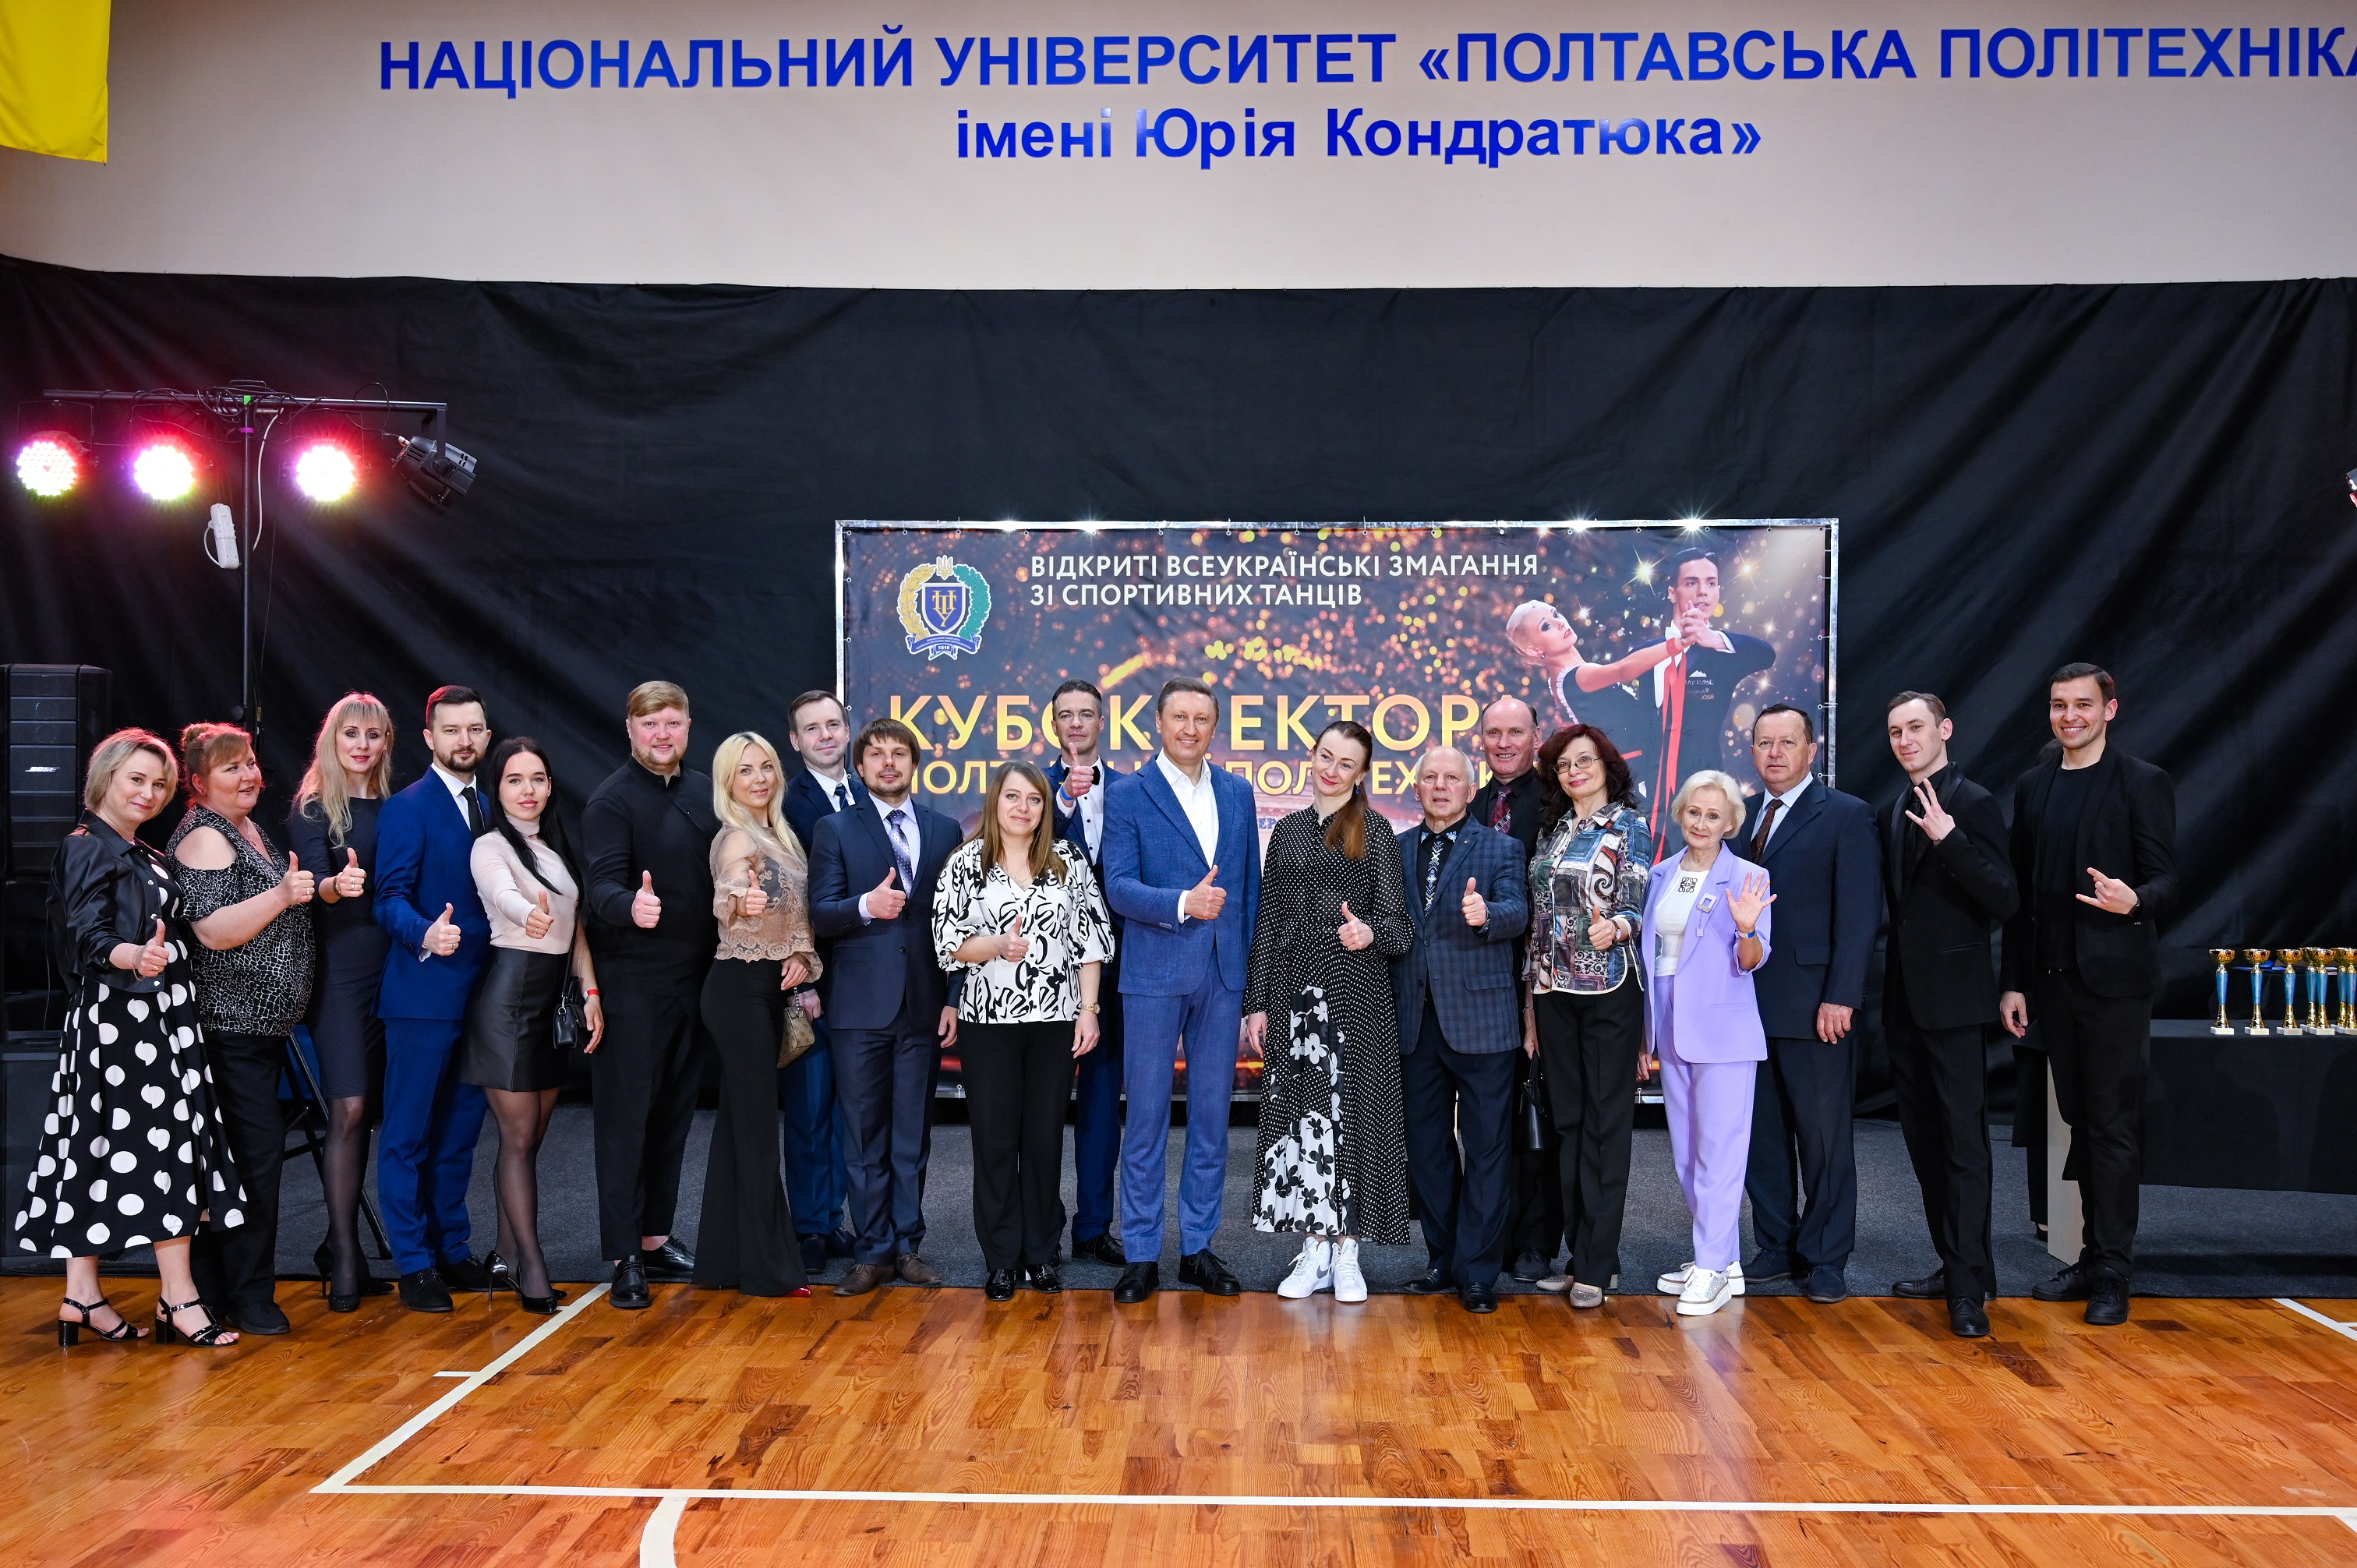 У політехніці відбулись другі Всеукраїнські змагання зі спортивних танців «Кубок ректора Полтавської політехніки»